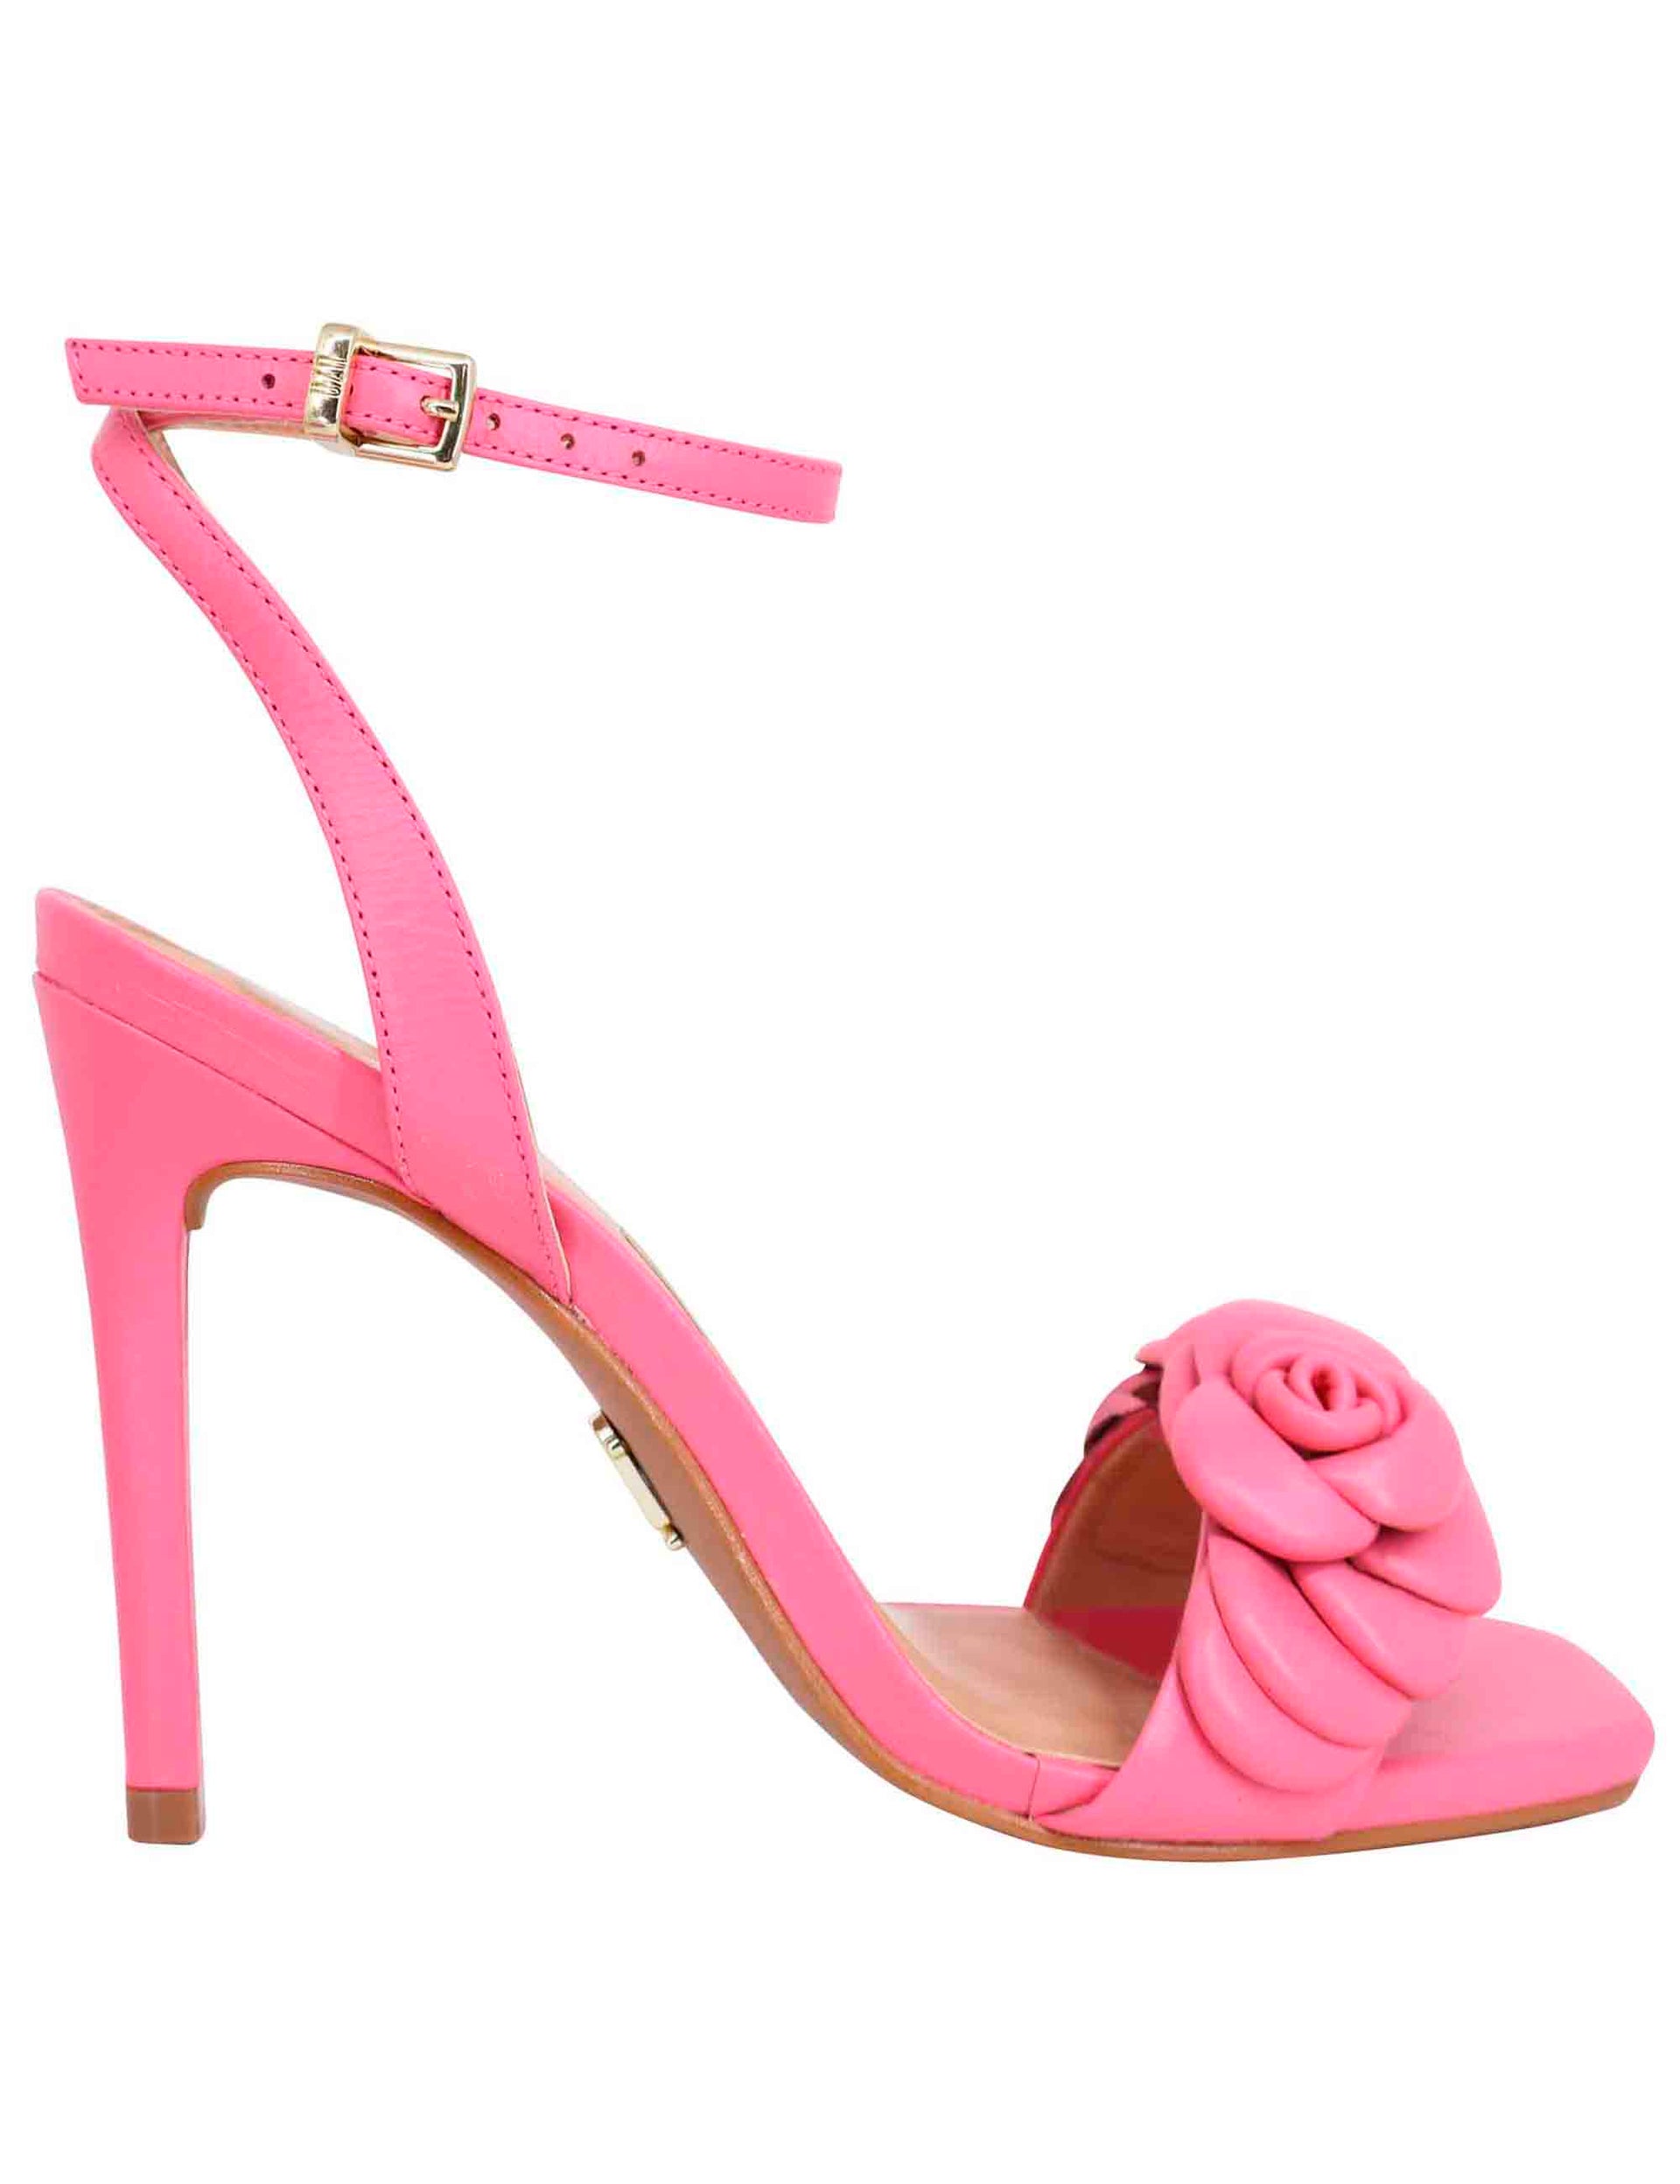 Sandali donna in pelle rosa con tacco alto cinturino alla caviglia e fiore in pelle